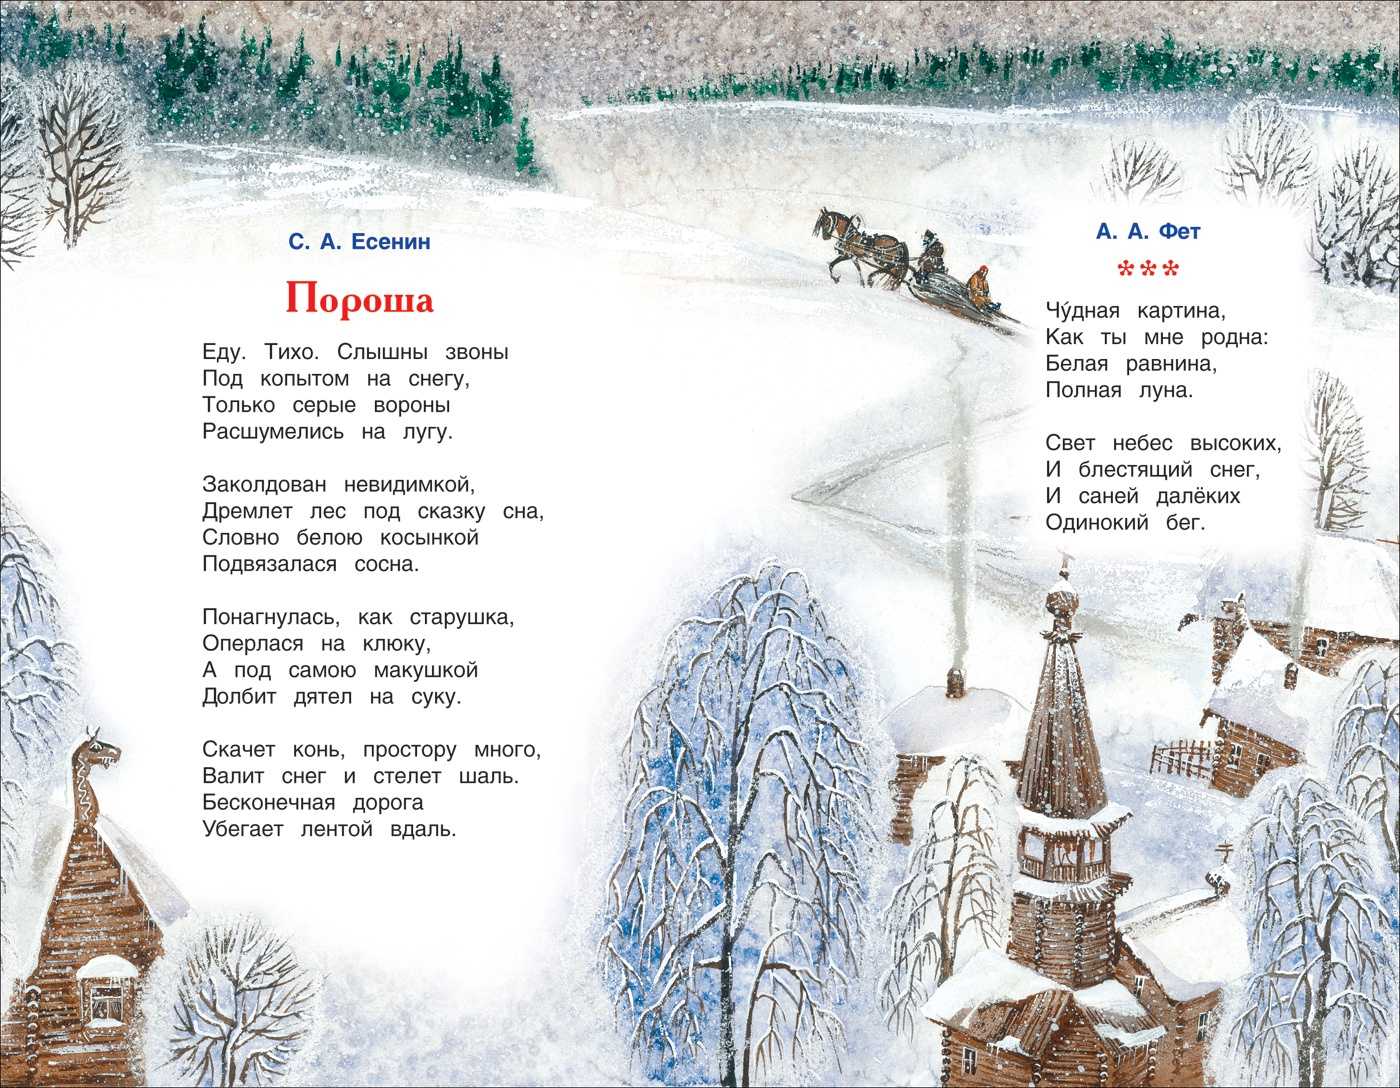 Стихи про зиму - лучшие стихотворения о зиме